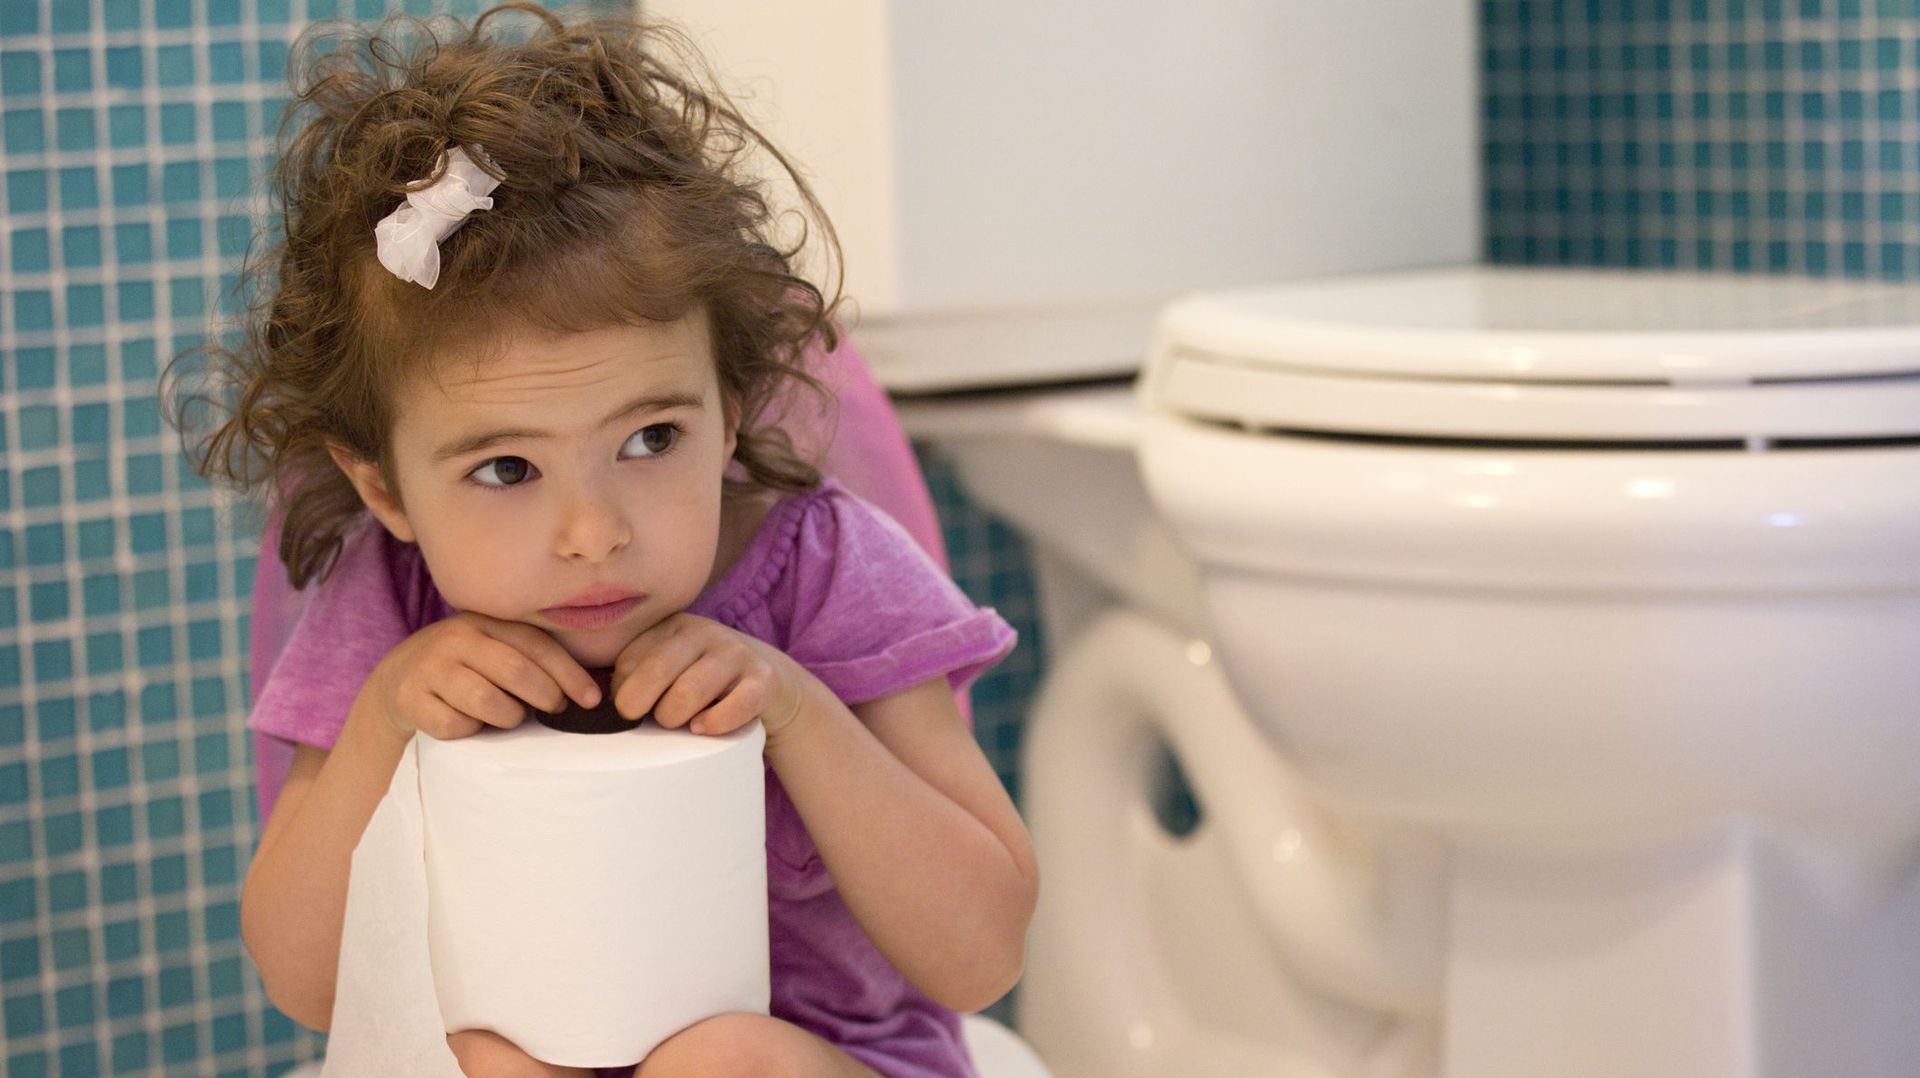 La propreté chez les enfants : on suggère plutôt que de donner l’ordre